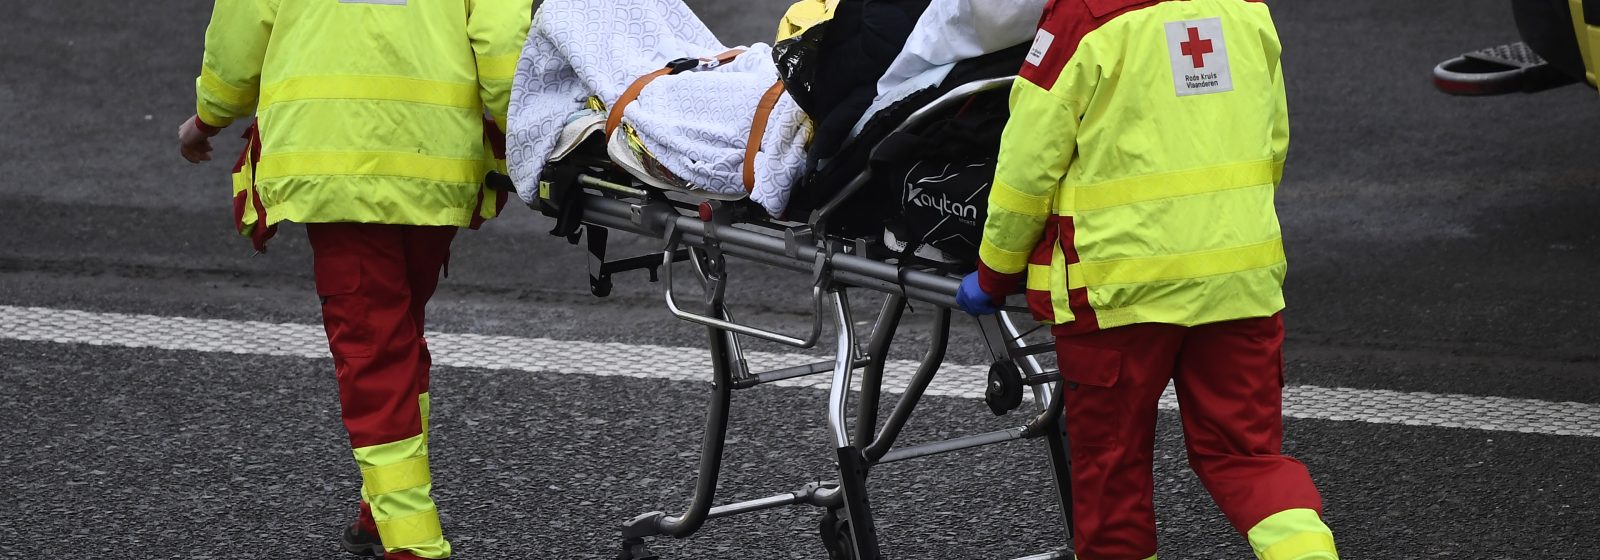 Ambulanciers brengen slachtoffer ongeval weg (archiefbeeld)